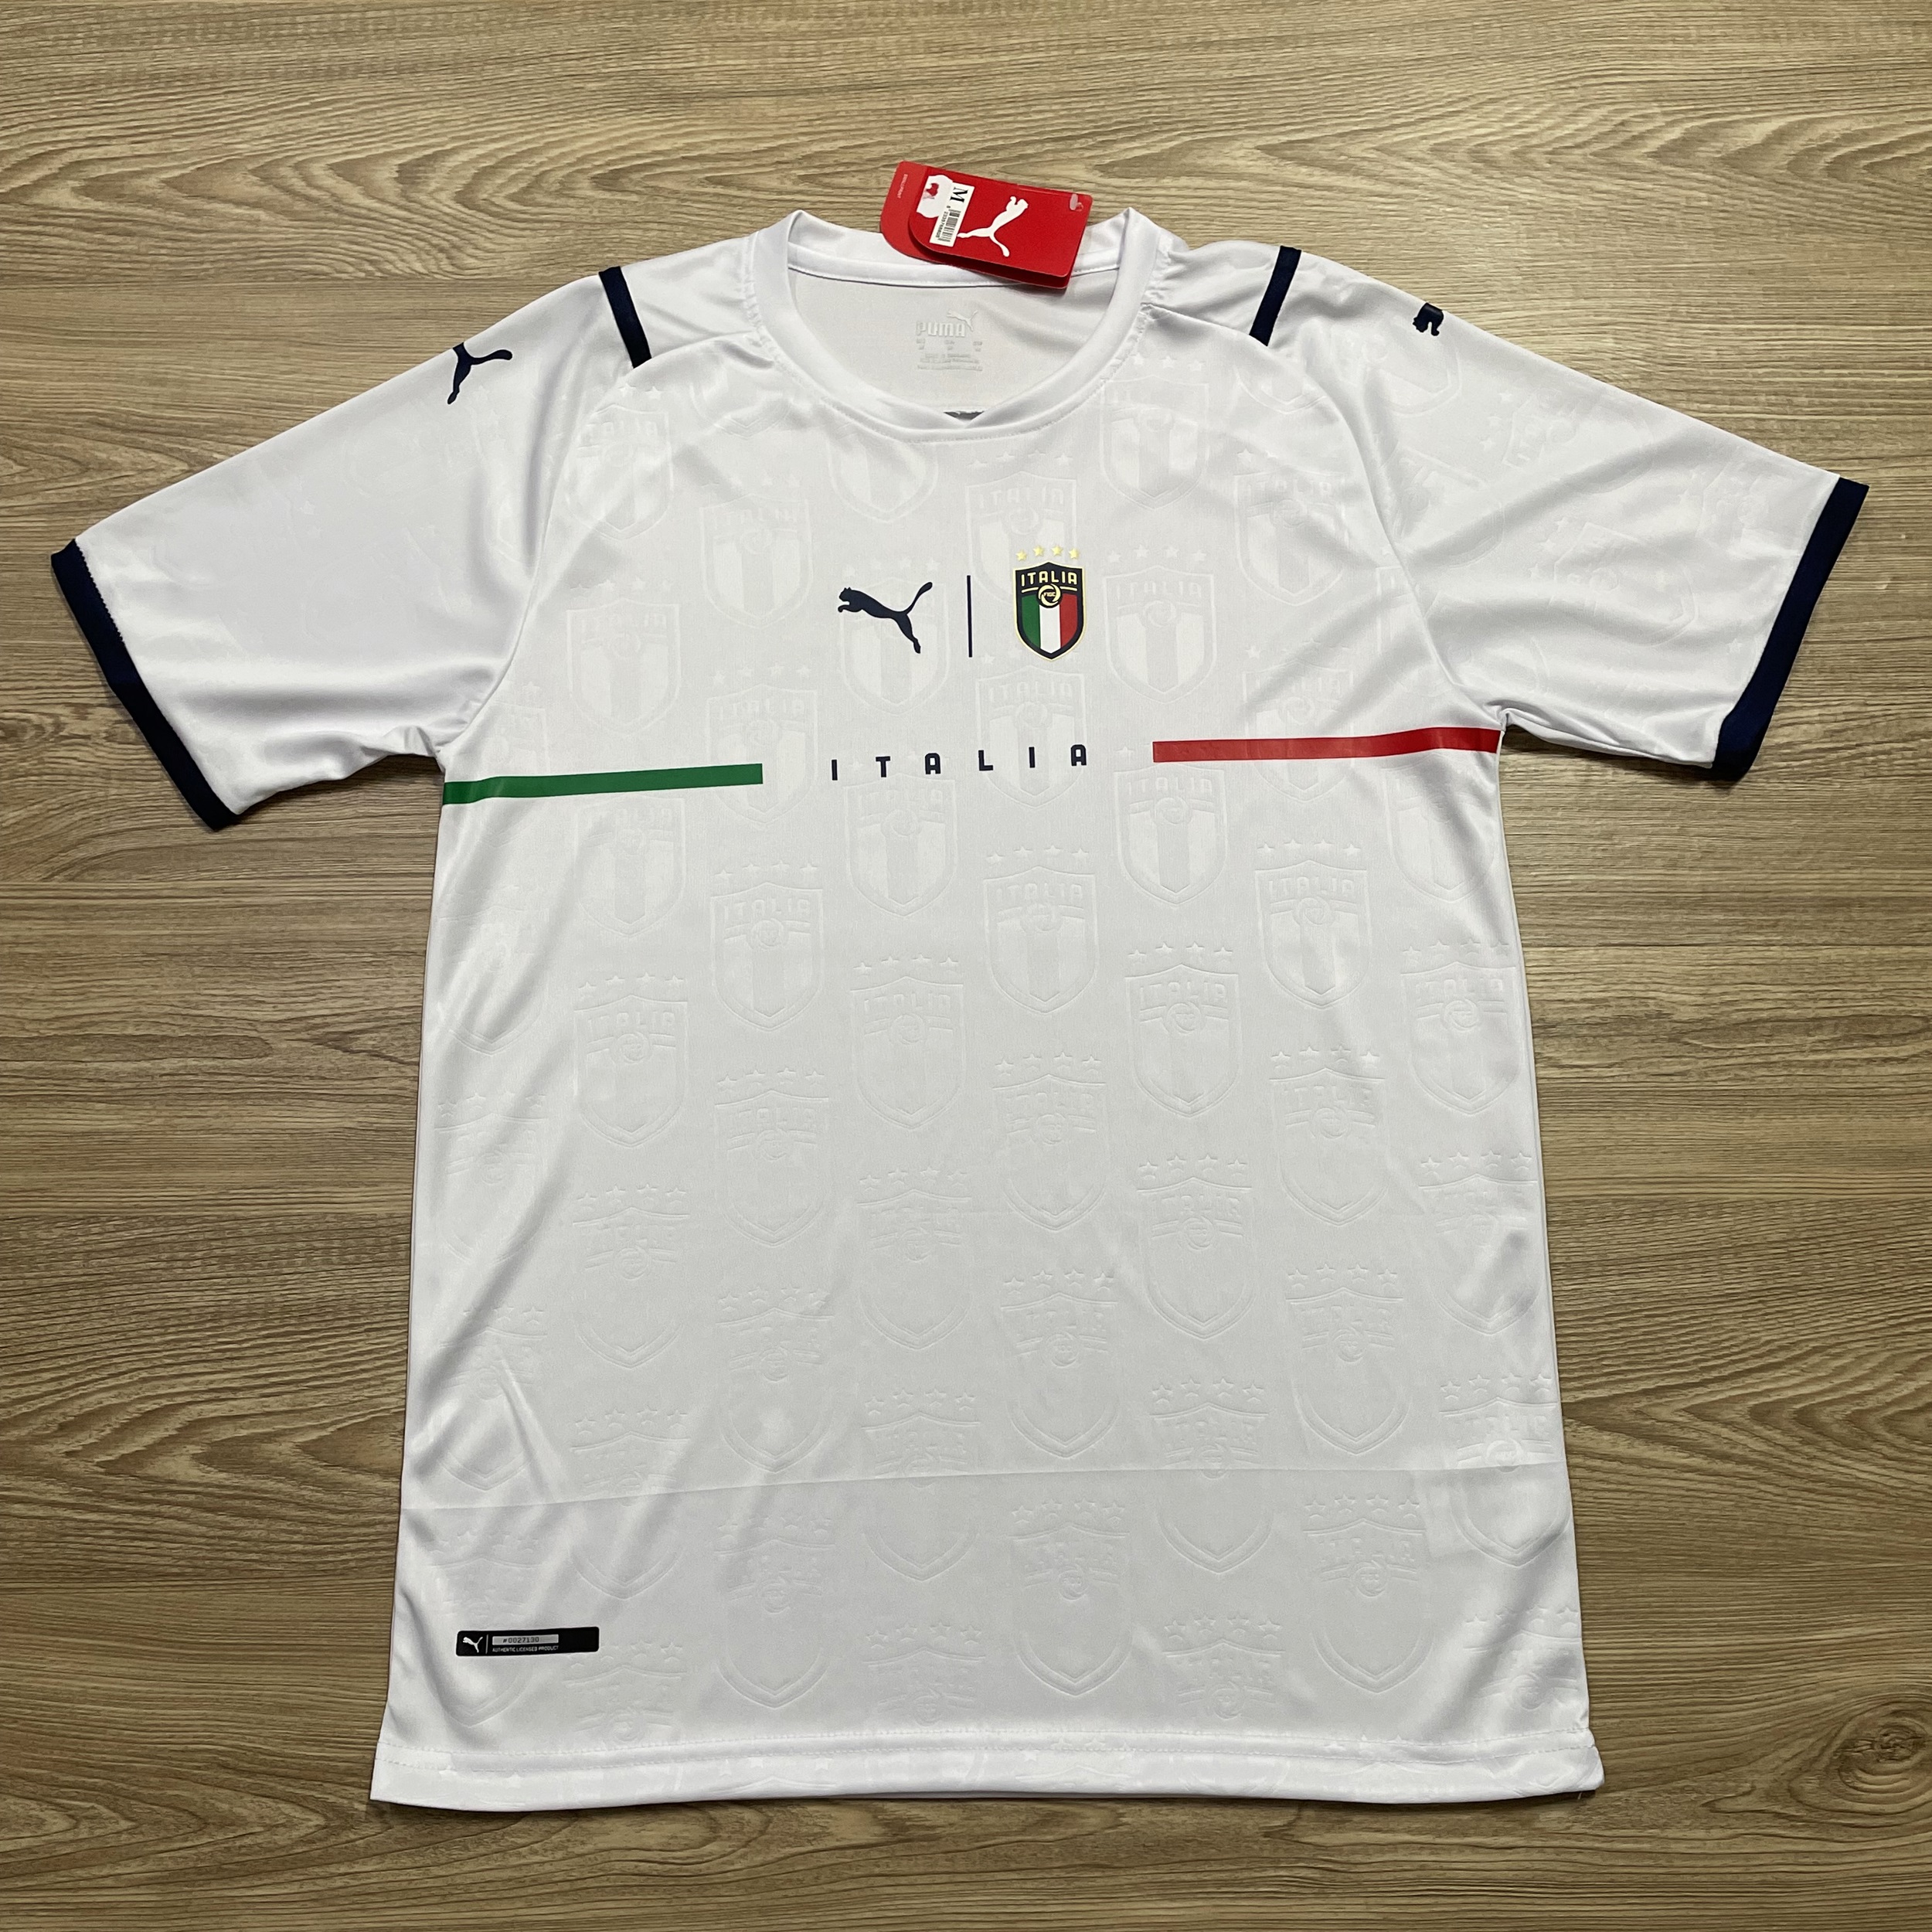 เสื้อสโมสรฟุตบอล เสื้อฟุตบอลผู้ใหญ่ ทีม Italy เสื้อบอล เสื้อกีฬา เสื้อฟุตบอลชาย ใส่สบาย รับประกันคุณภาพ ผ้าเกรด A